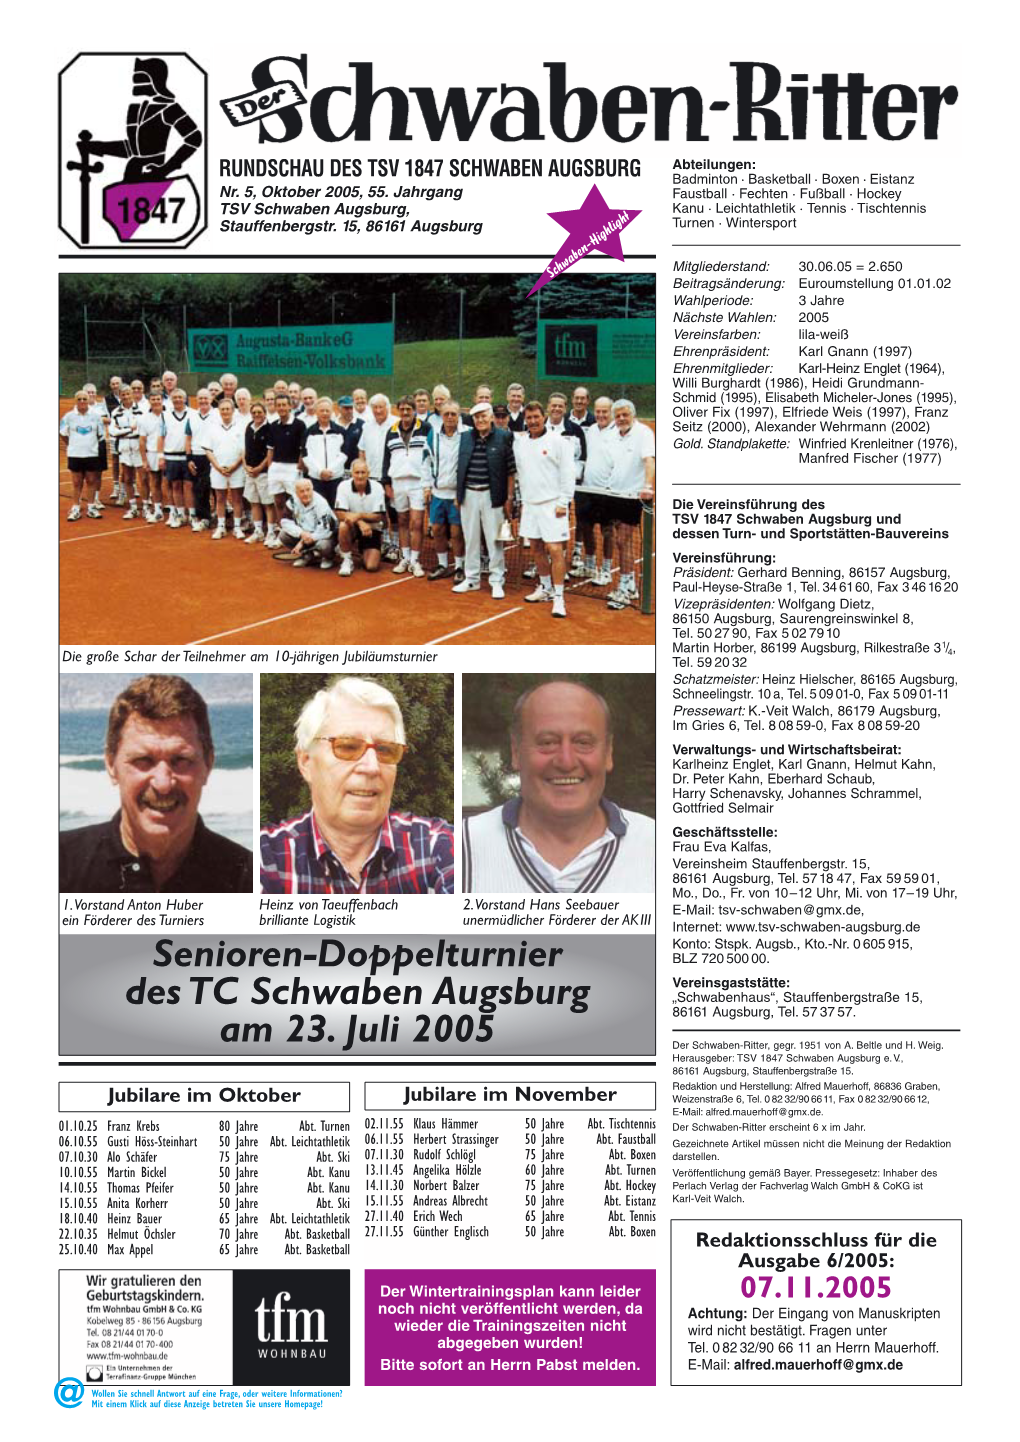 Senioren-Doppelturnier Des TC Schwaben Augsburg Am 23. Juli 2005